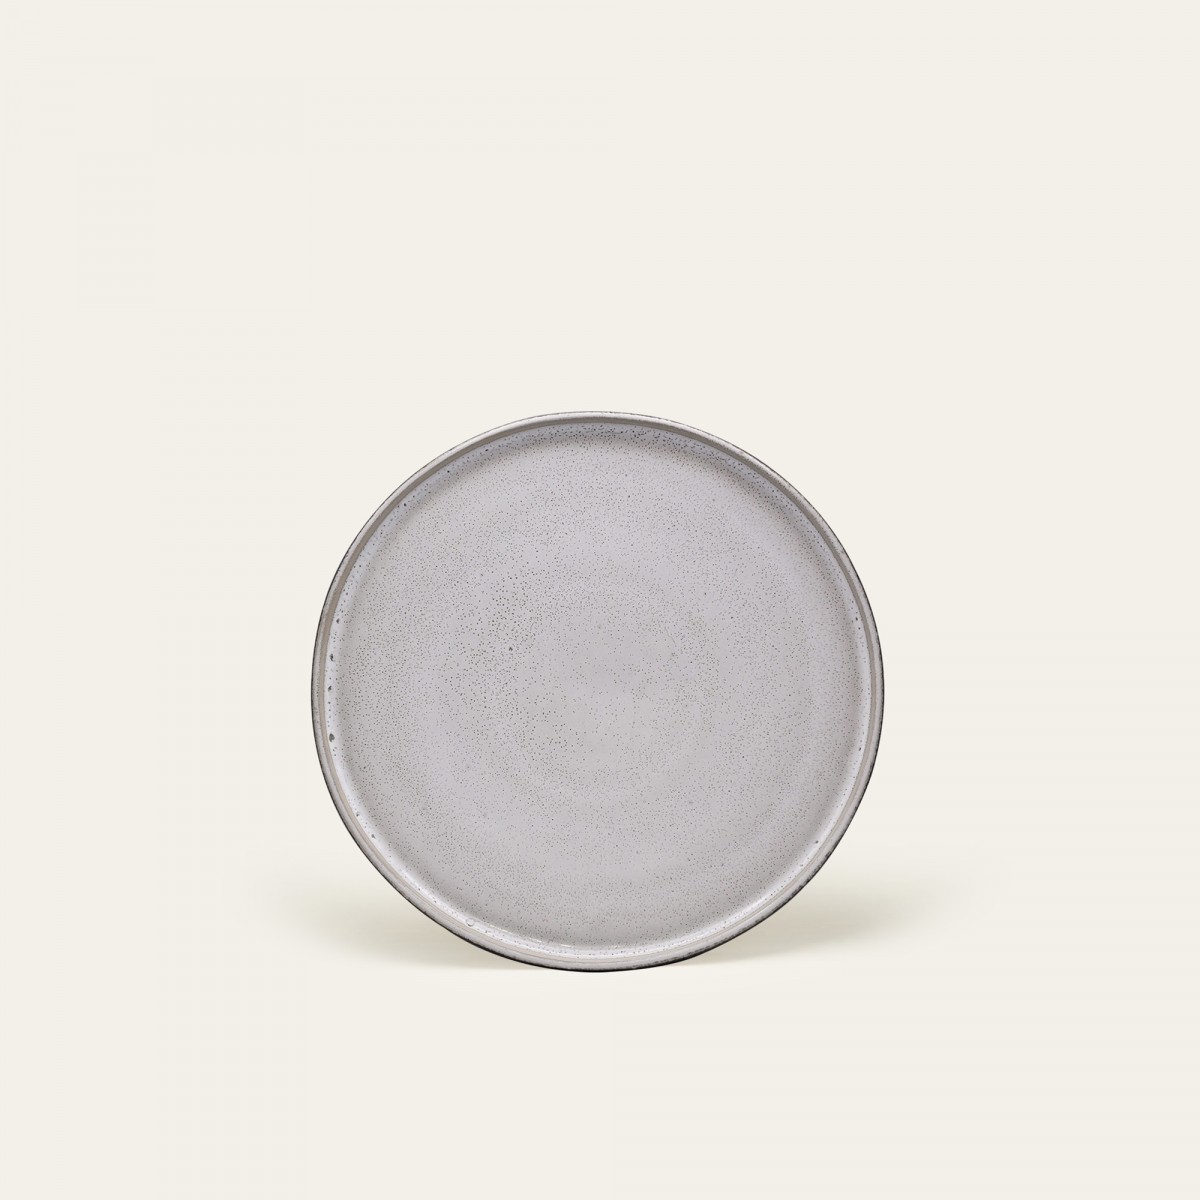 Handgemachter Steingut Teller Ddoria klein - Granit Grau - EDDA stoneware
